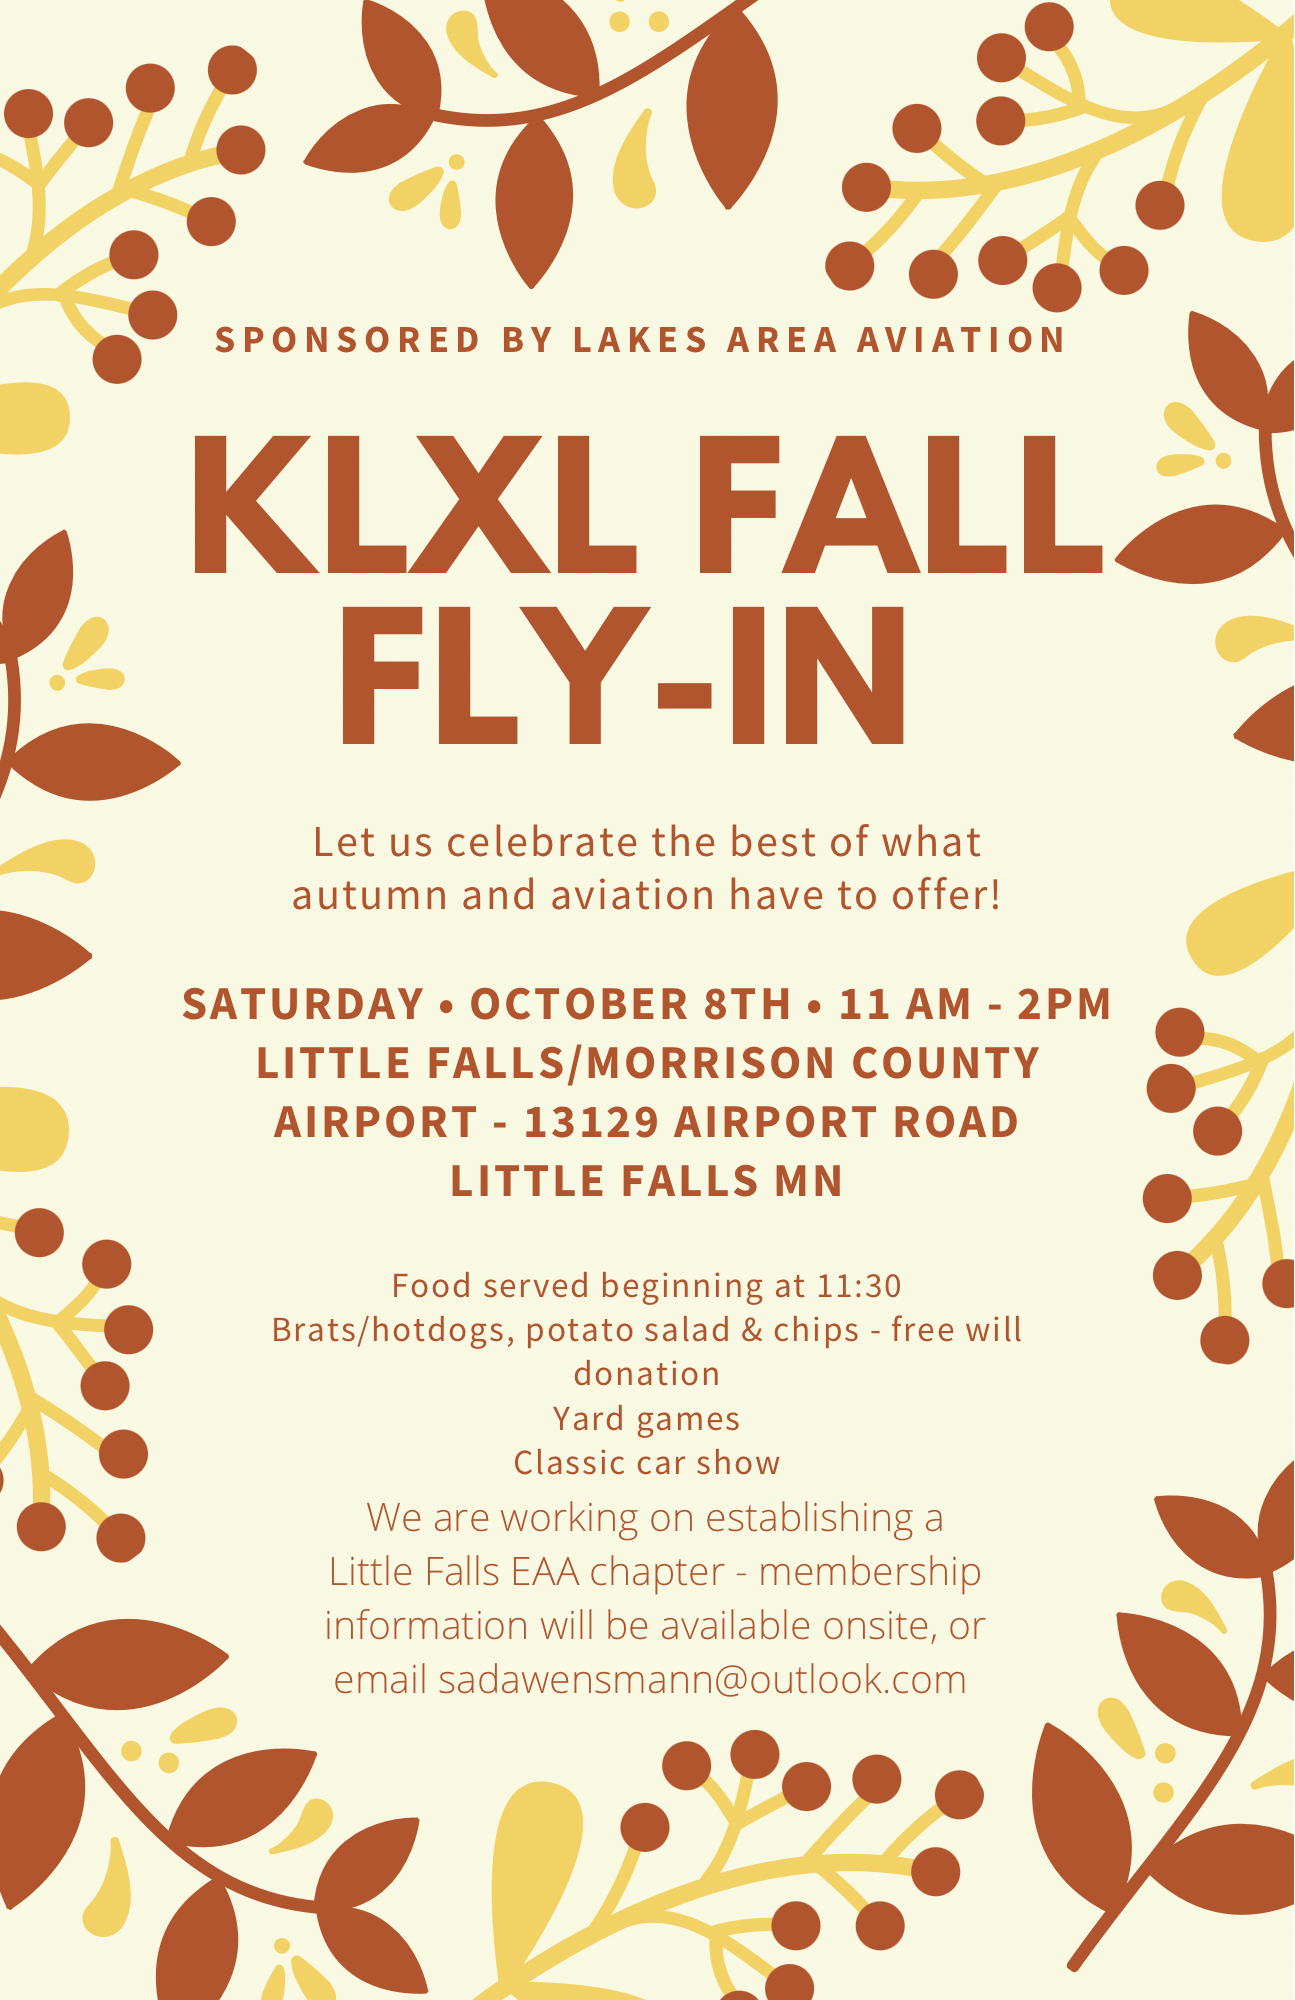 KLXL Fall Fly-In